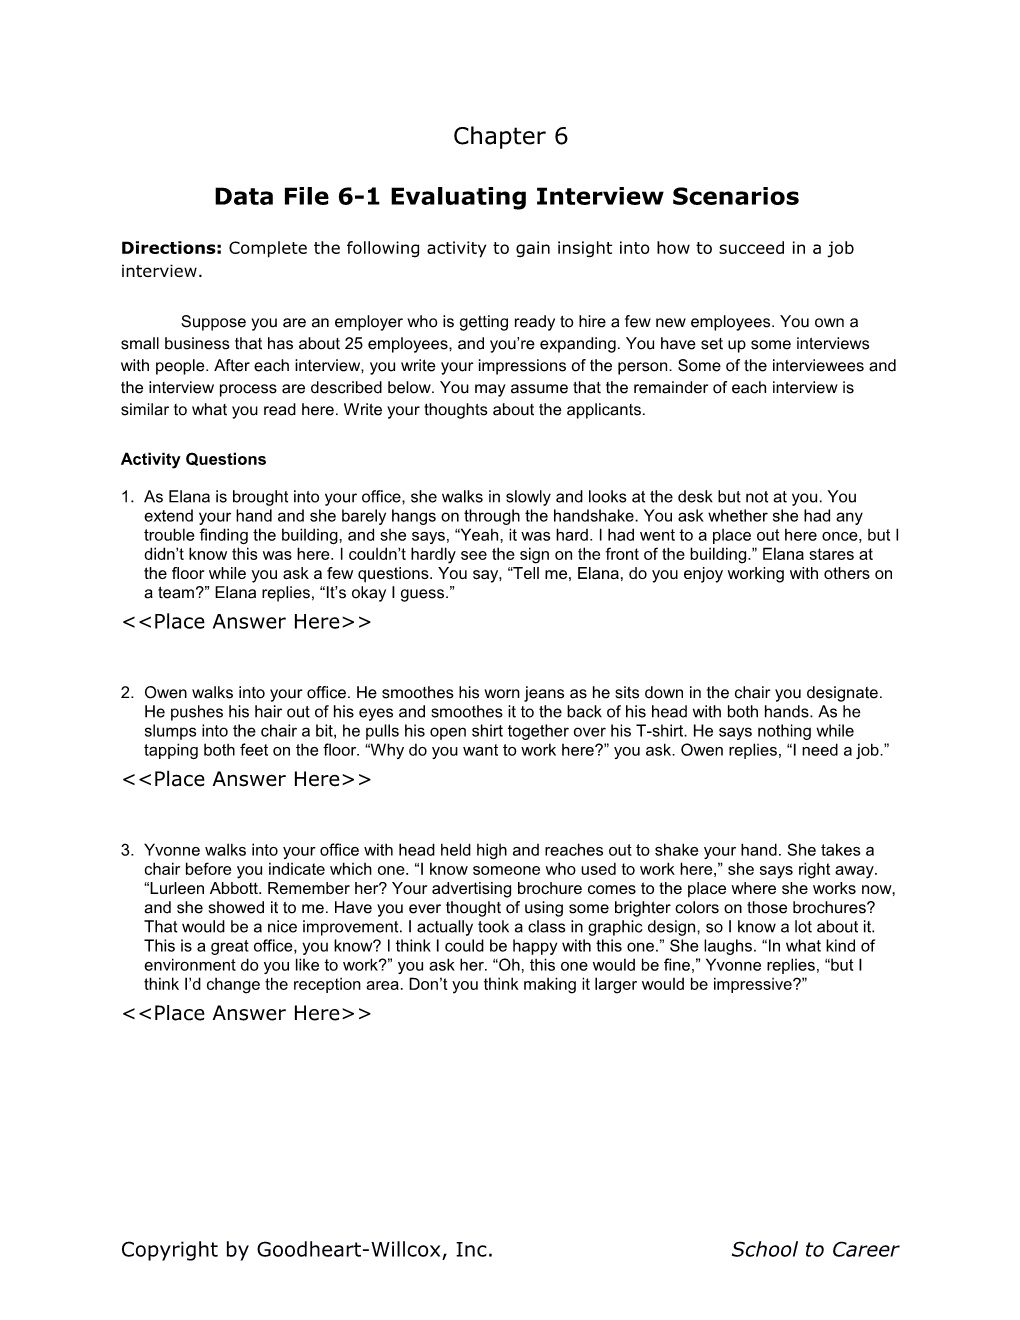 Data File6-1 Evaluating Interview Scenarios